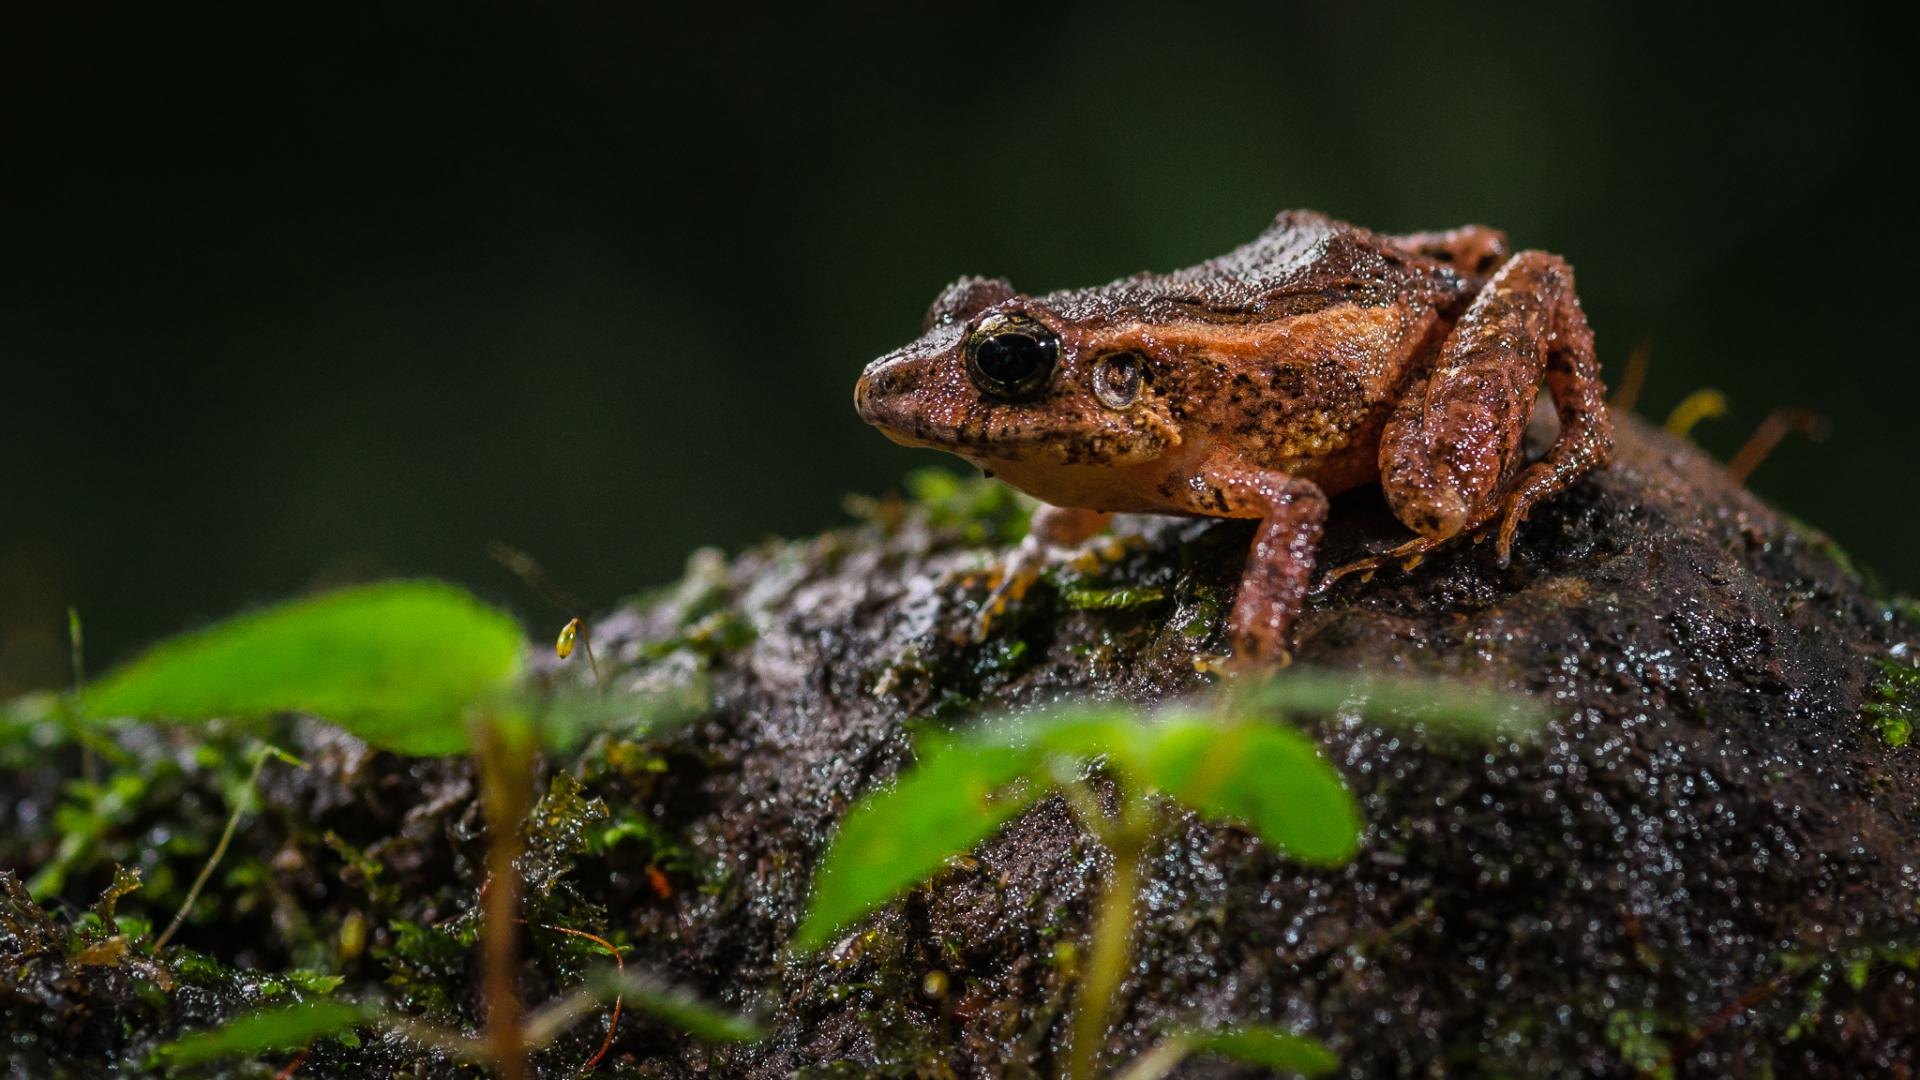 Entdecken Sie die exotische Tierwelt Costa Ricas auf einer Rundreise mit uns